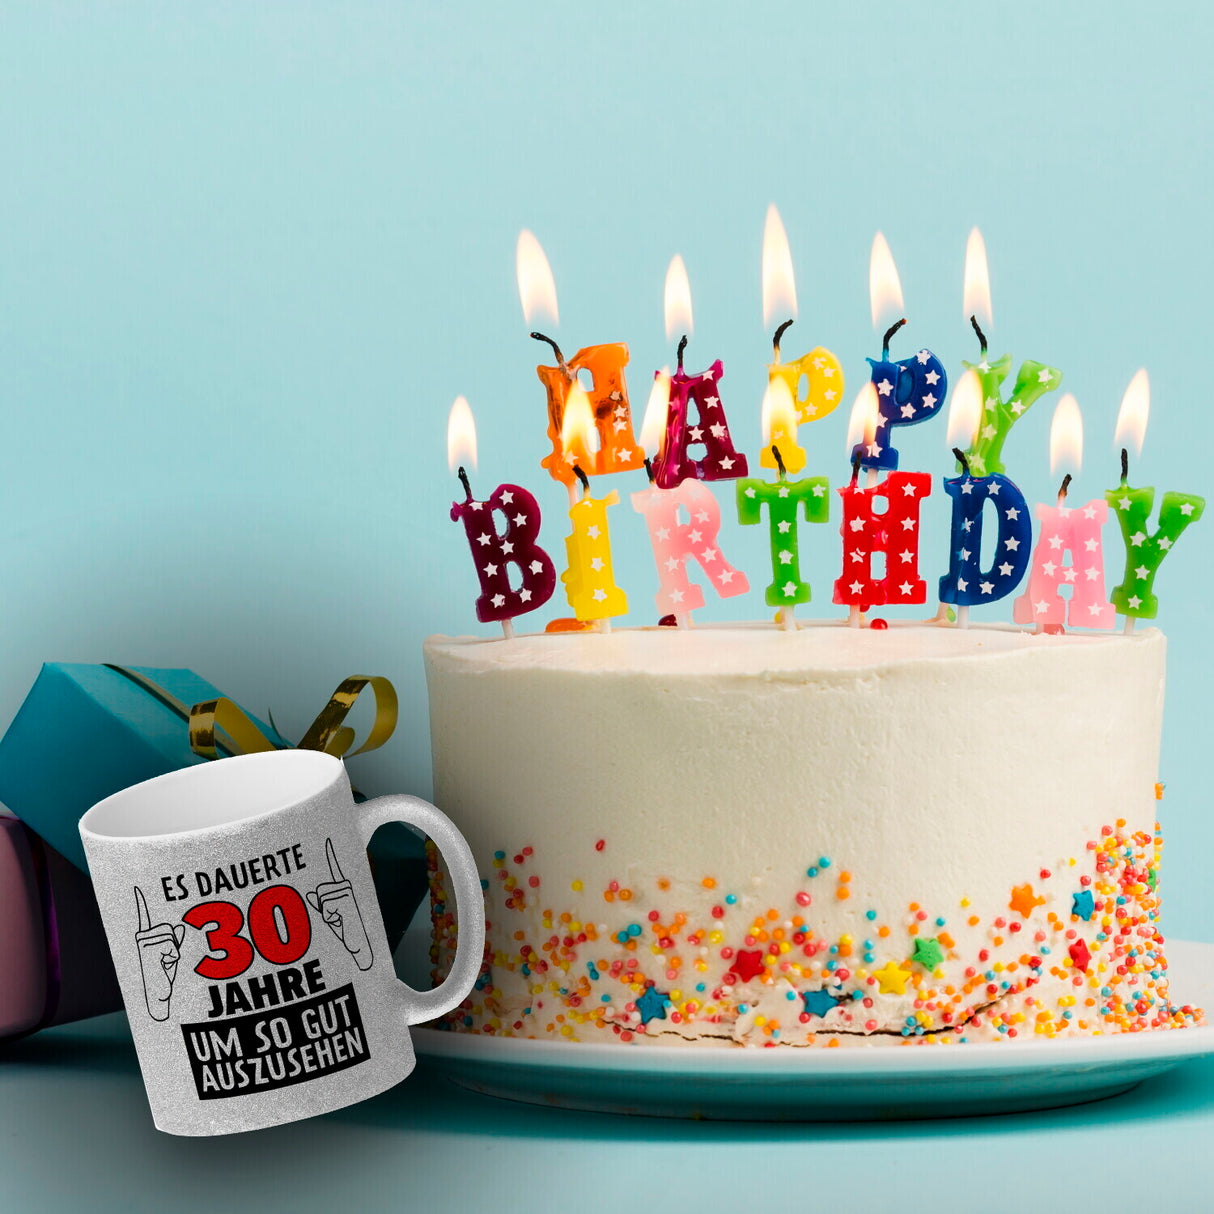 Kaffeebecher für den 30. Geburtstag mit Motiv: Gut aussehen